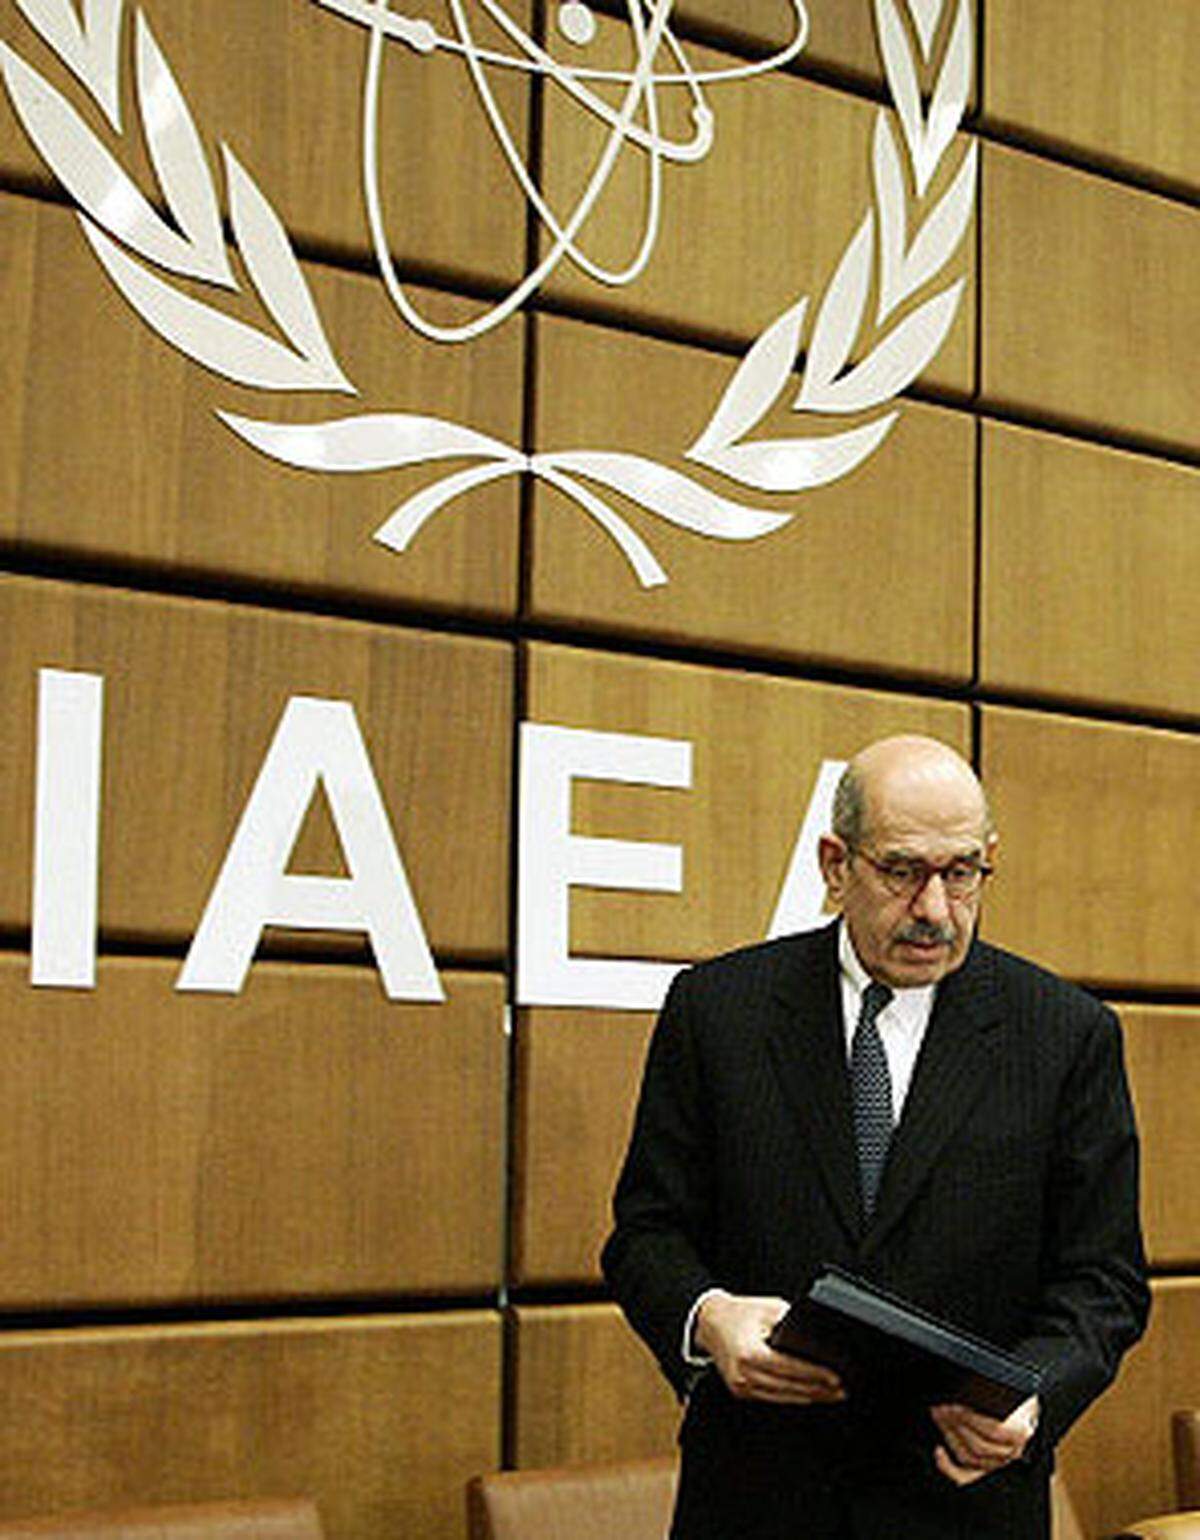 Die Internationale Atomenergiebehörde (IAEA) und ihr Generaldirektor, der Ägypter Mohammed ElBaradei erhielten den Friedensnobelpreis für ihren Einsatz gegen den militärischen Missbrauch von Atomenergie und für die sichere Nutzung der Atomenergie für zivile Zwecke.